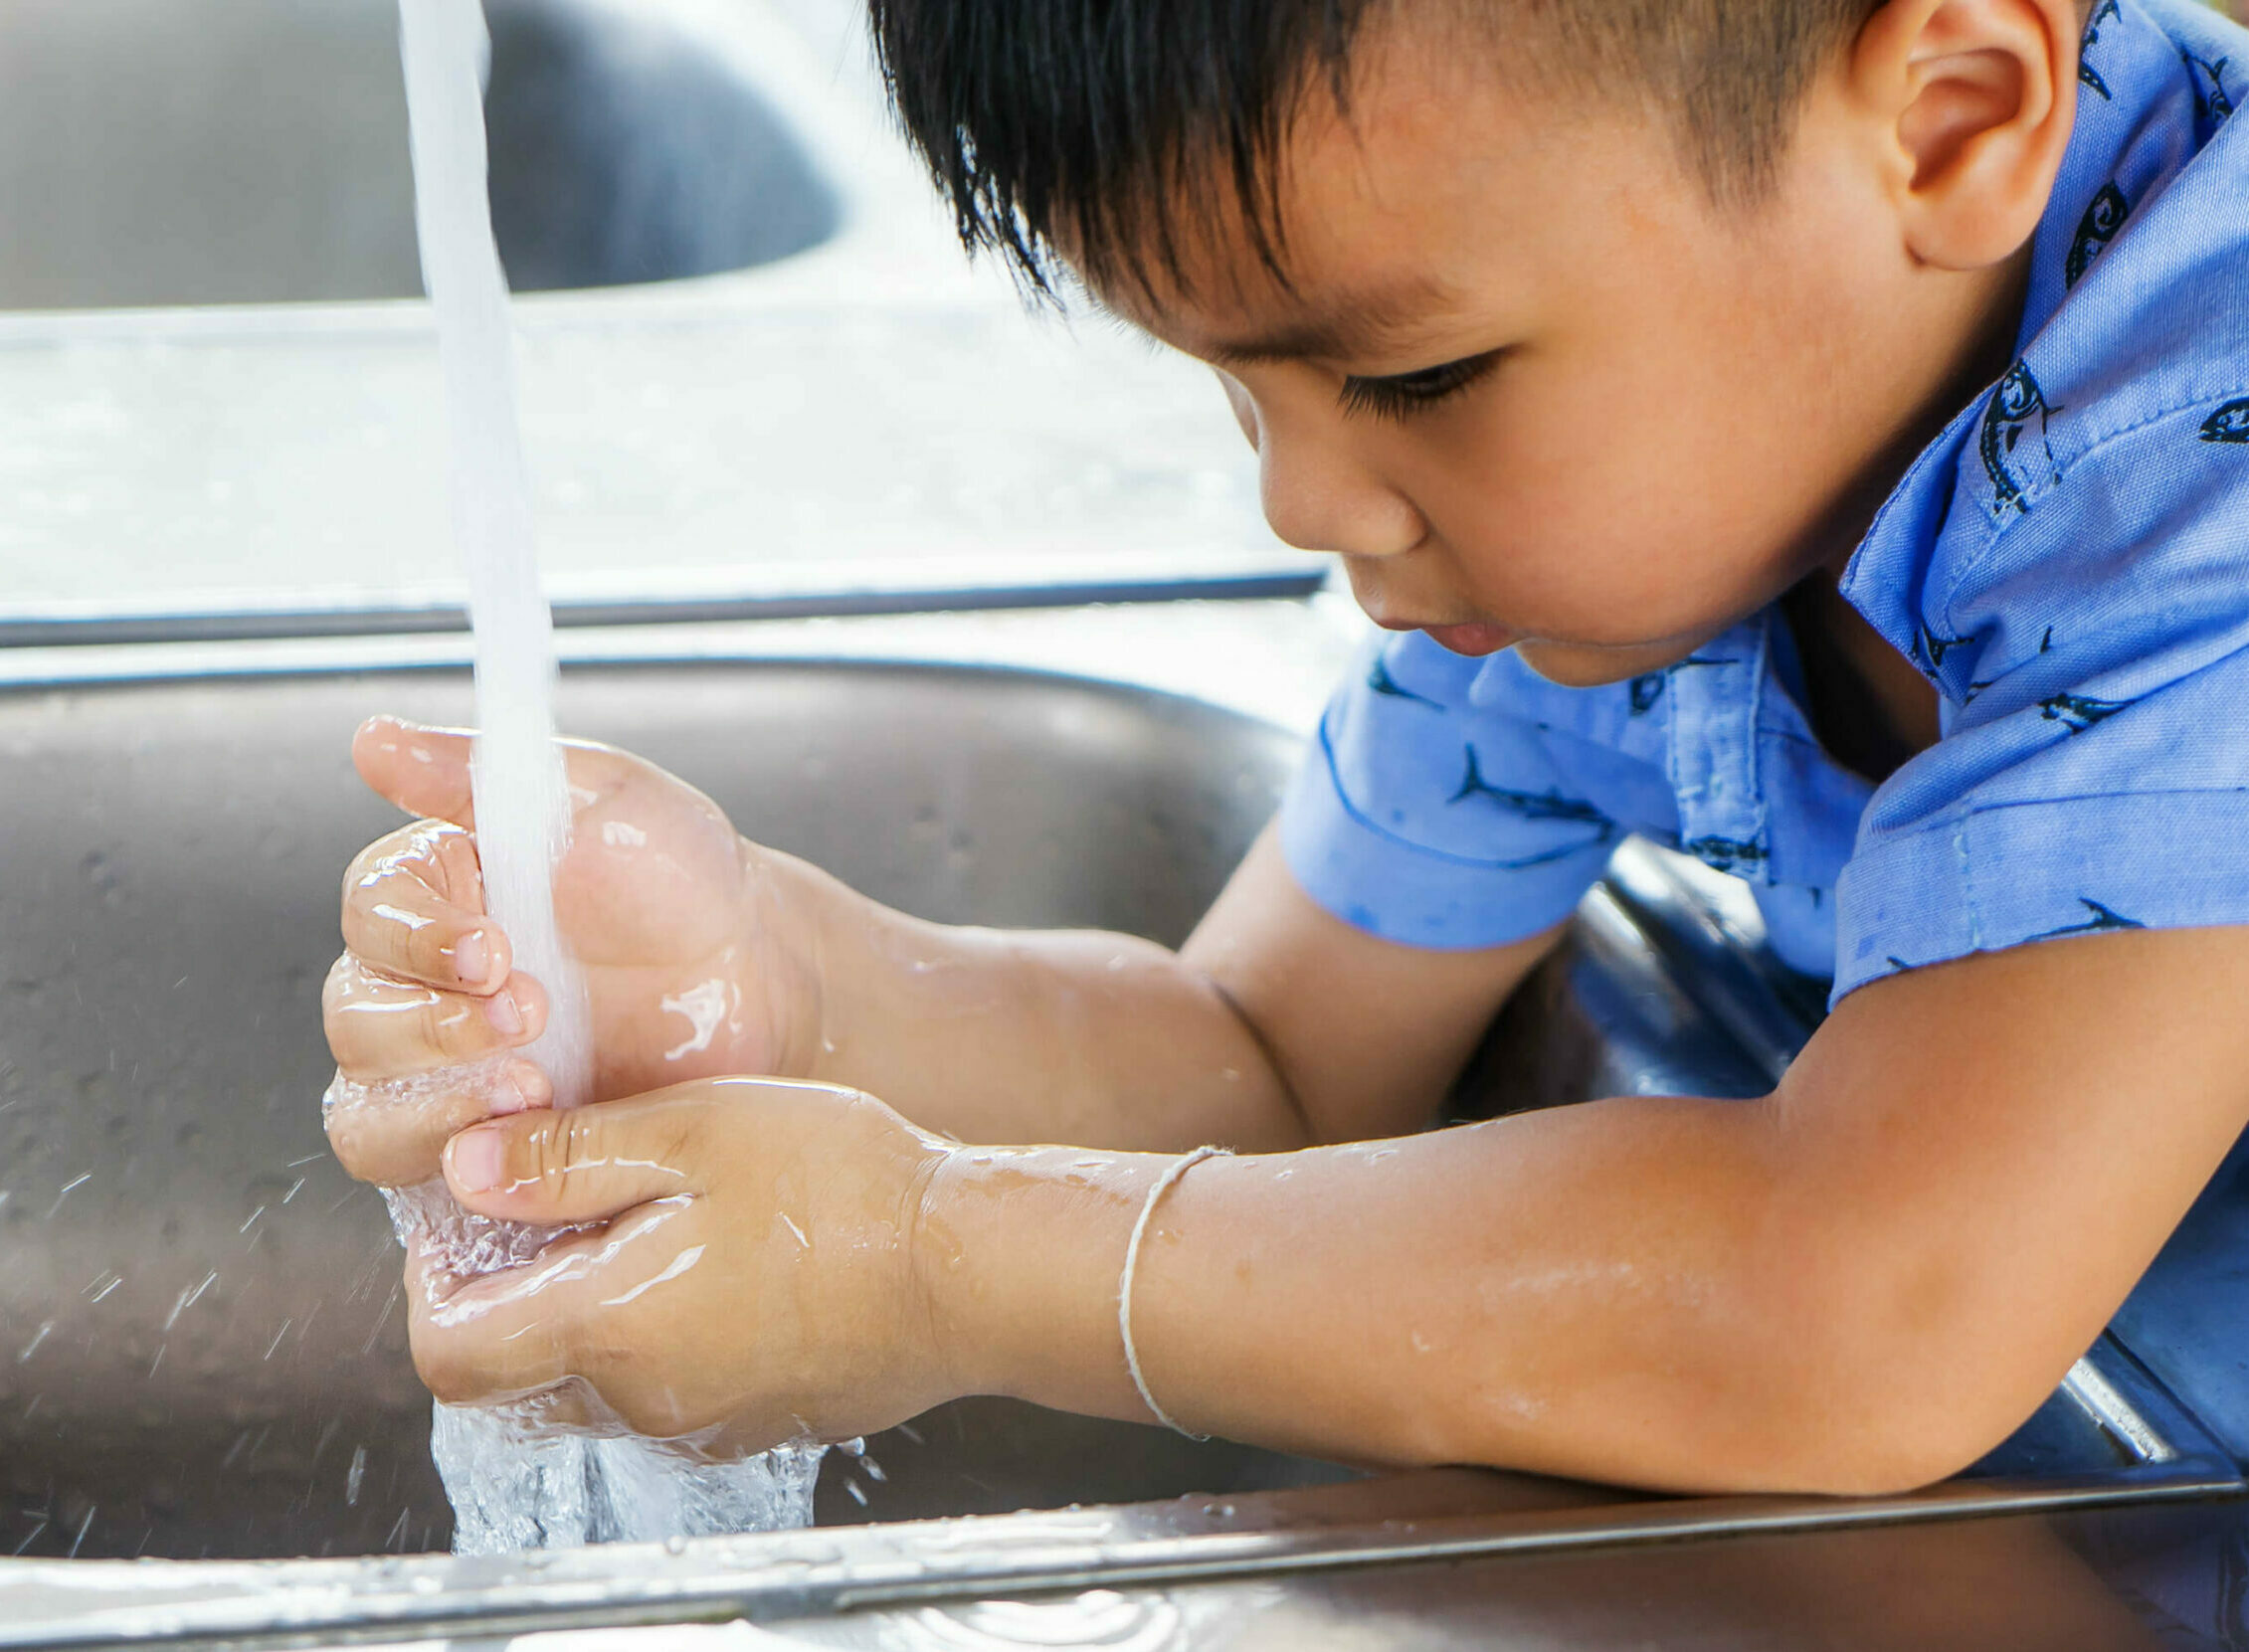 Frequent Handwashing Eliminates Viruses